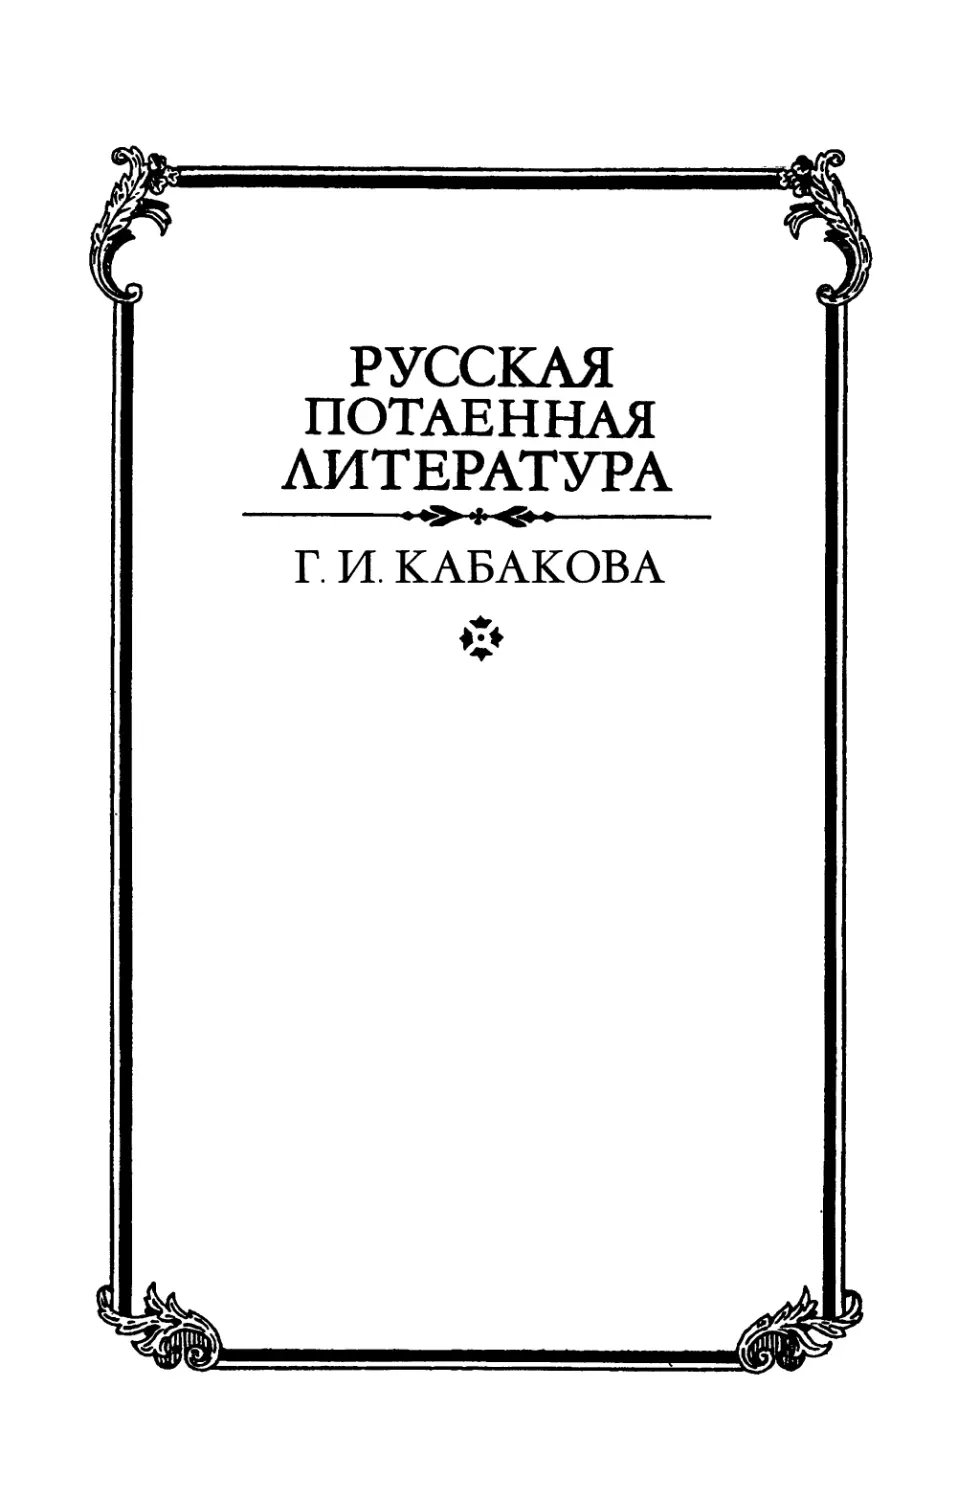 Кабакова Г.И. Антропология женского тела в славянской традиции - 2001